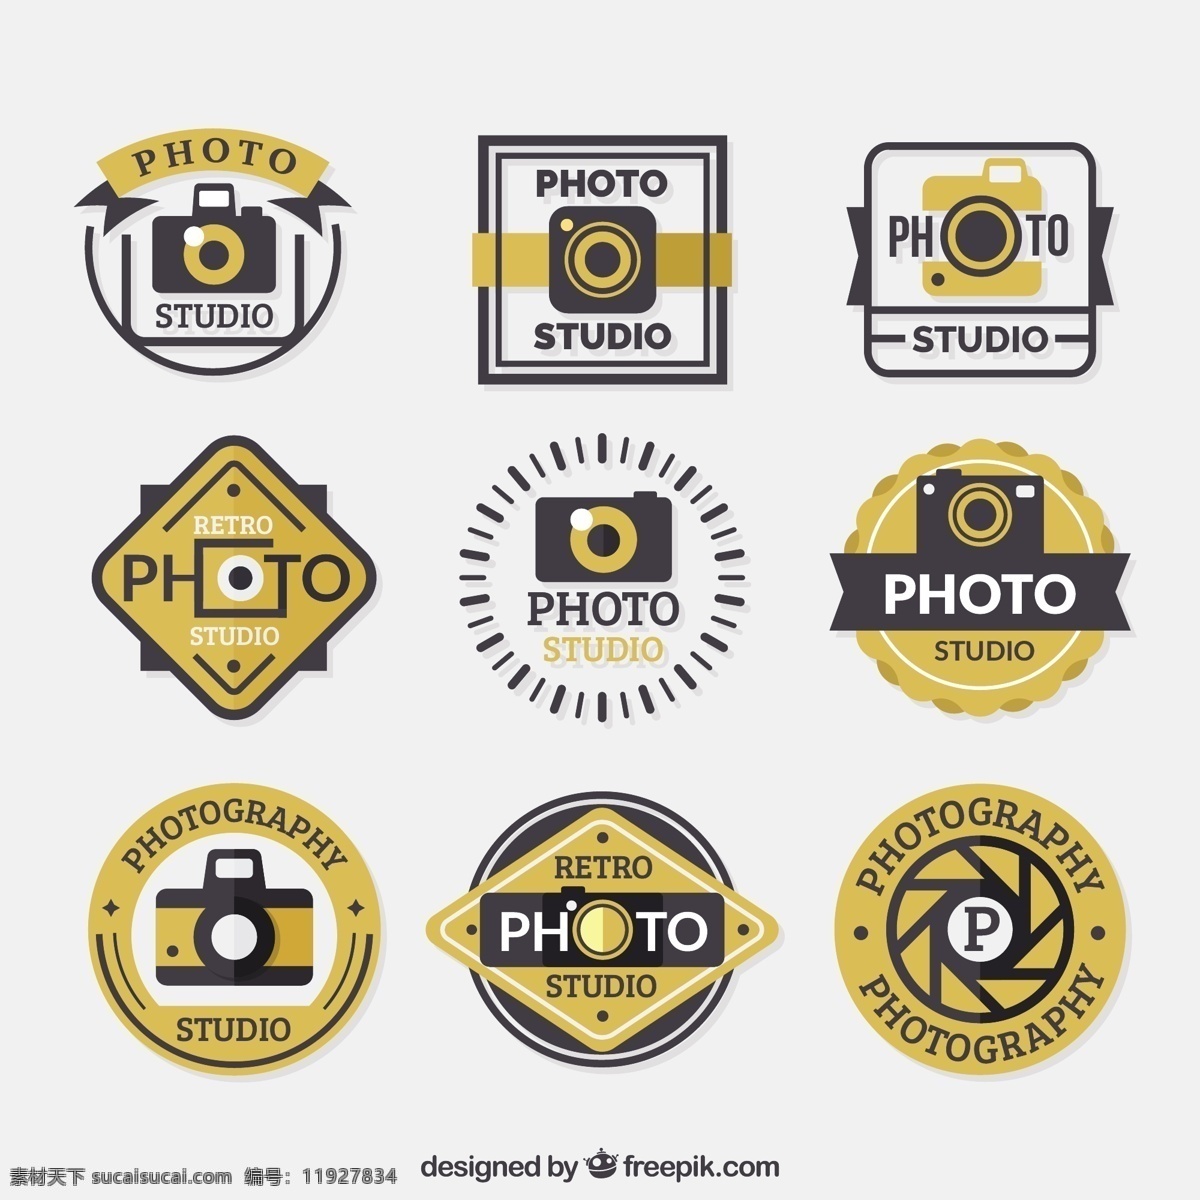 收藏的标志 颜色 黄金 黑色 标志 框架 业务 标签 相机 徽章 邮票 技术 贴纸 偏光片 照片 相框 标识 印章 数字 企业